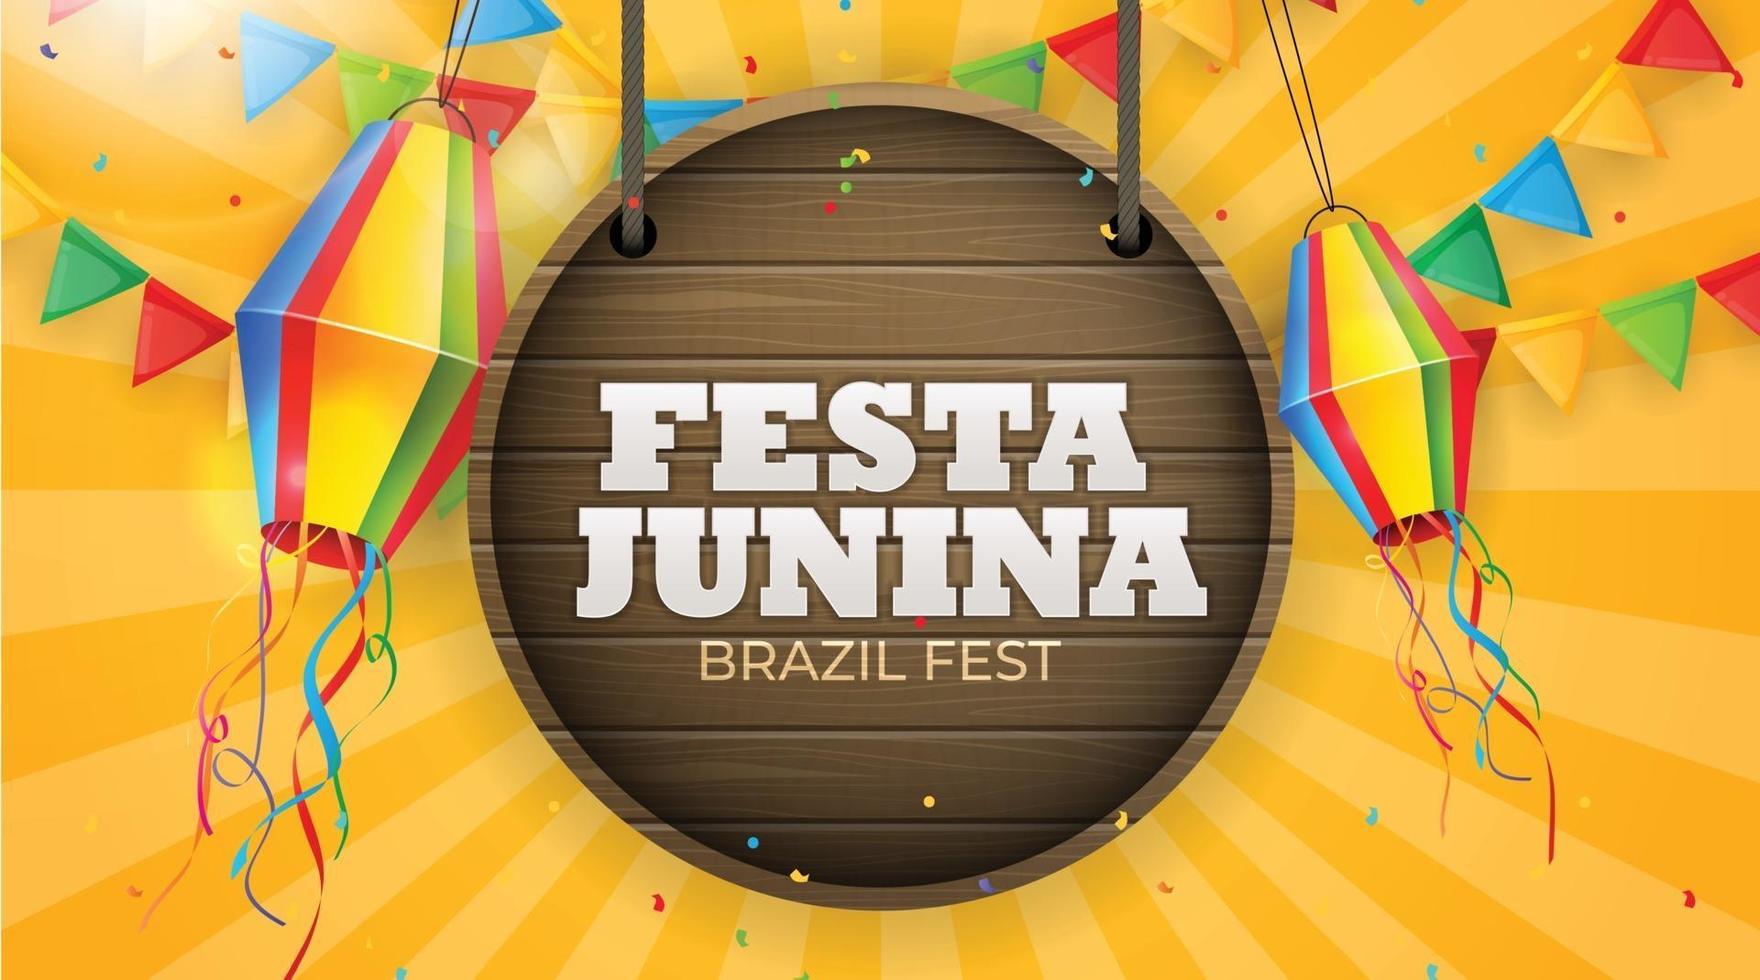 Fondo de fiesta junina con banderas del partido. festival de junio de brasil vector